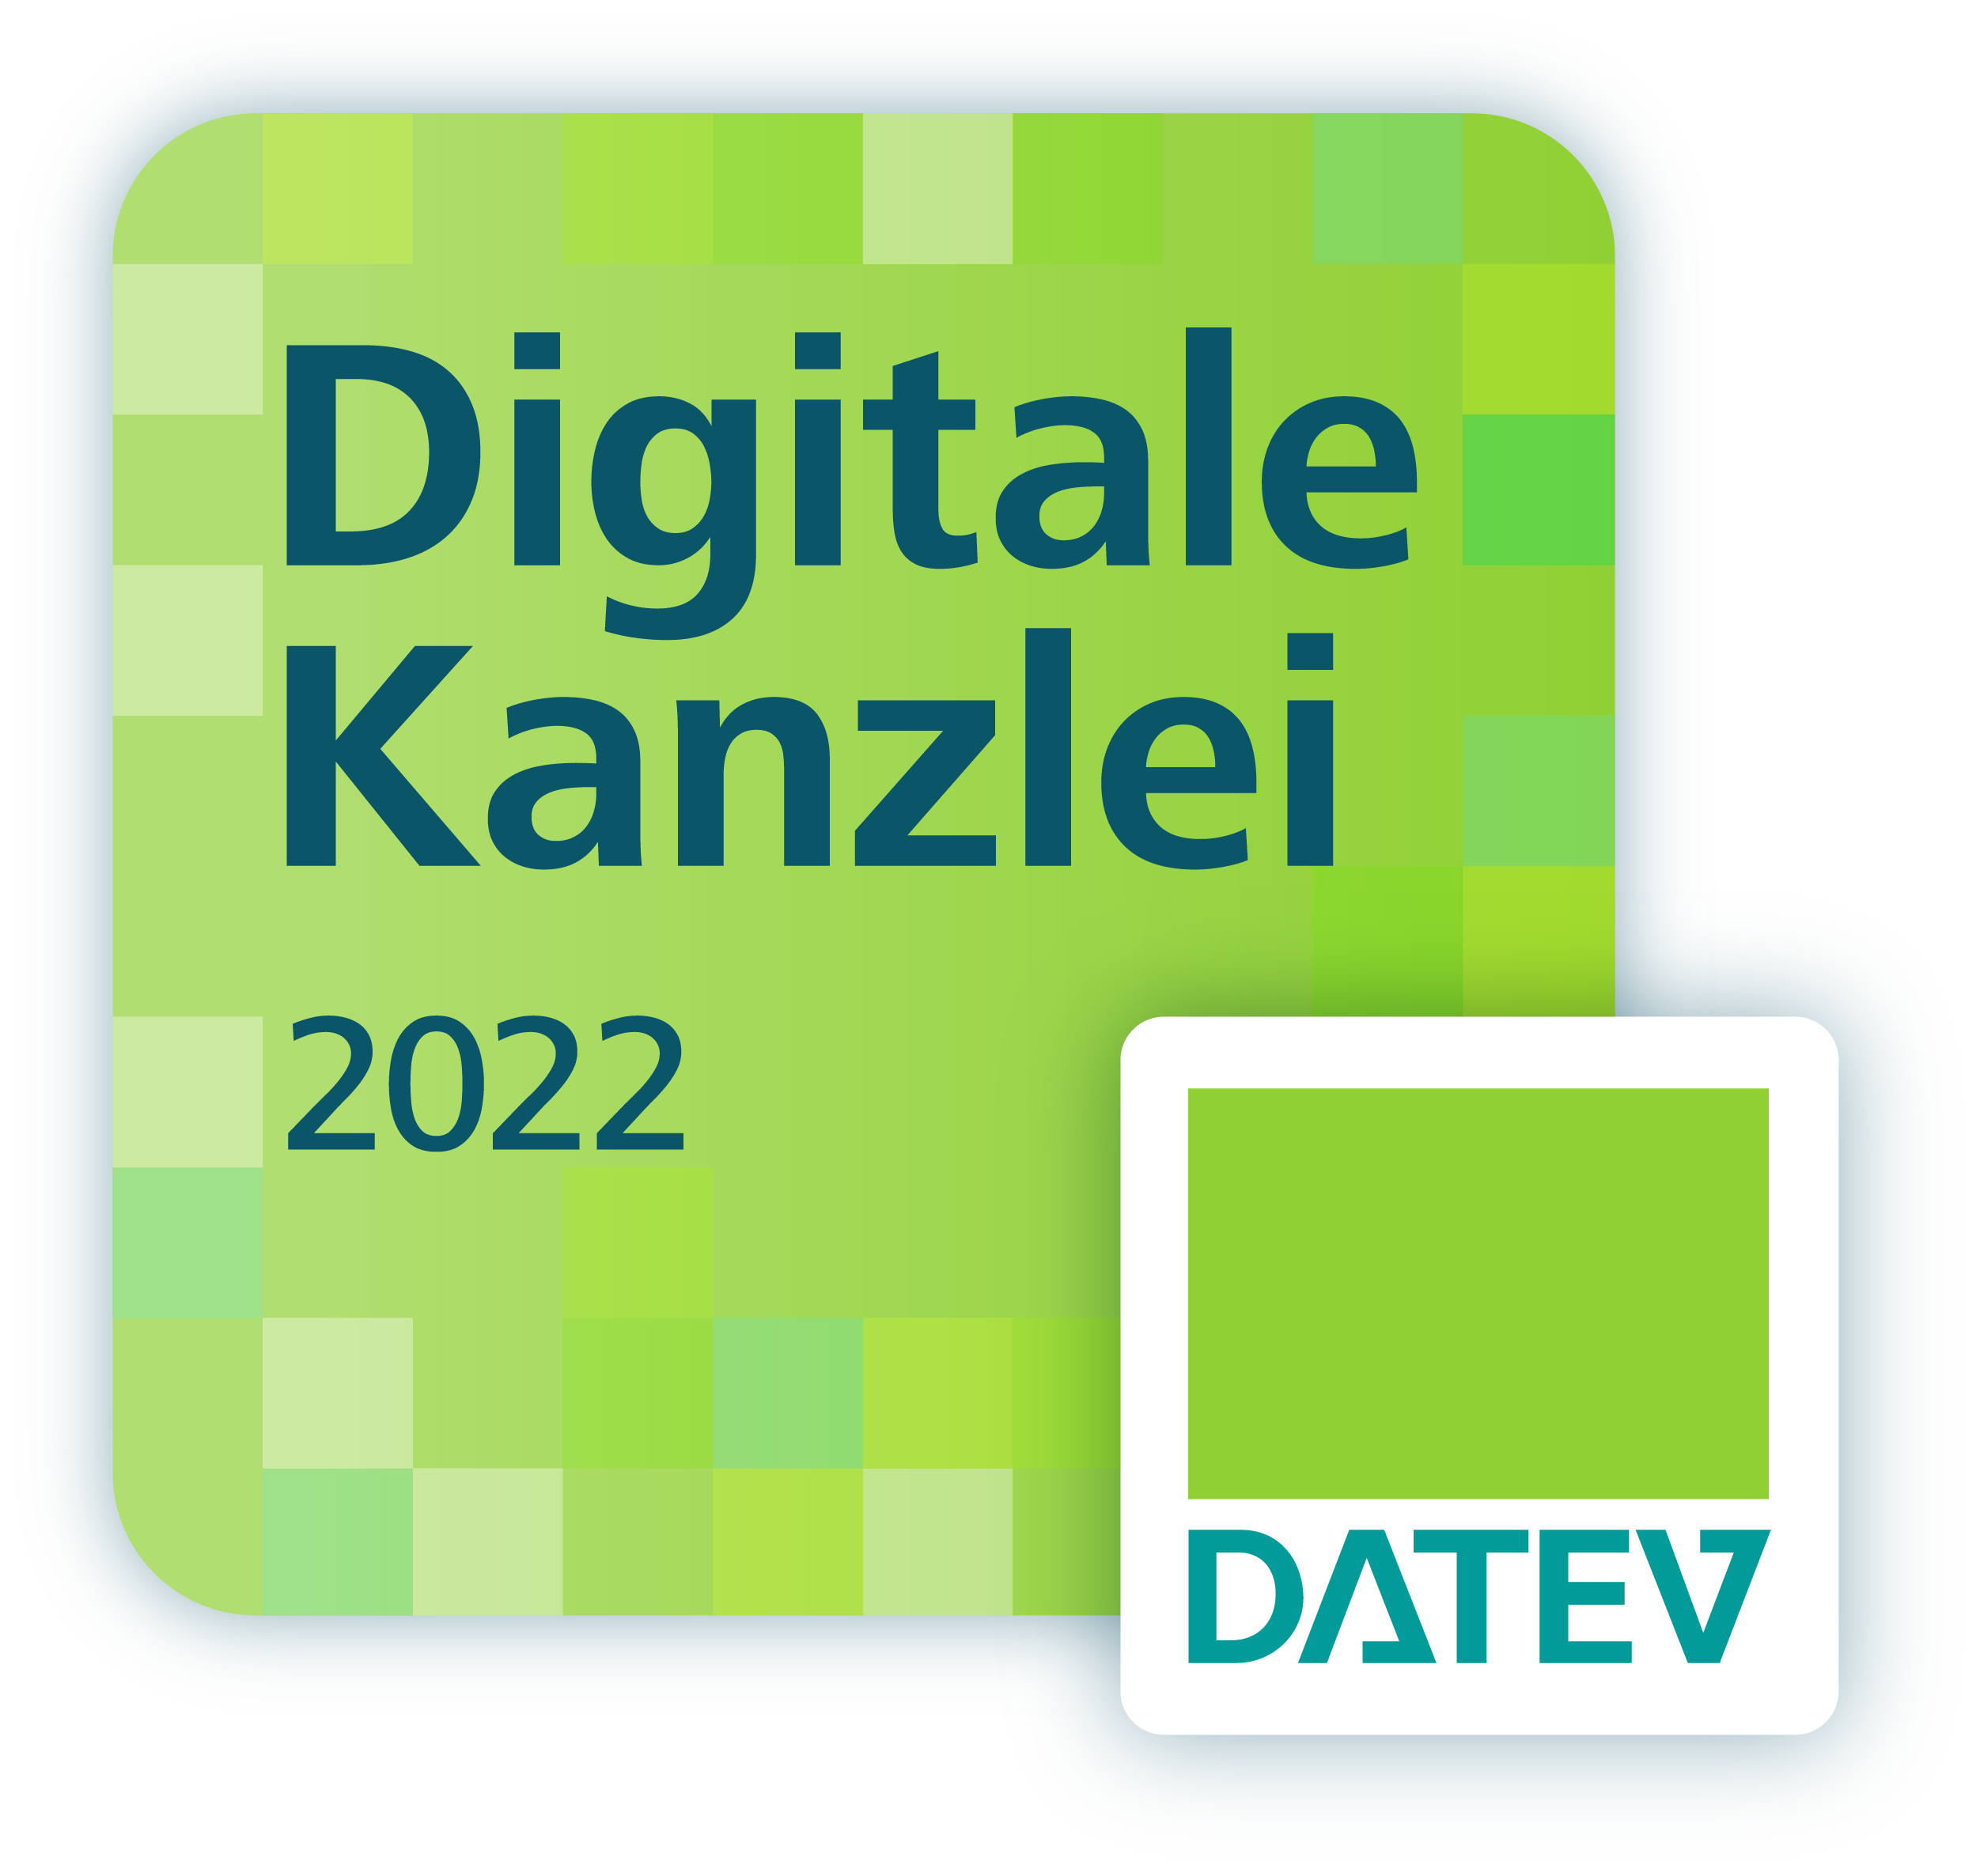 DATEV Digitale Kanzlei 2022